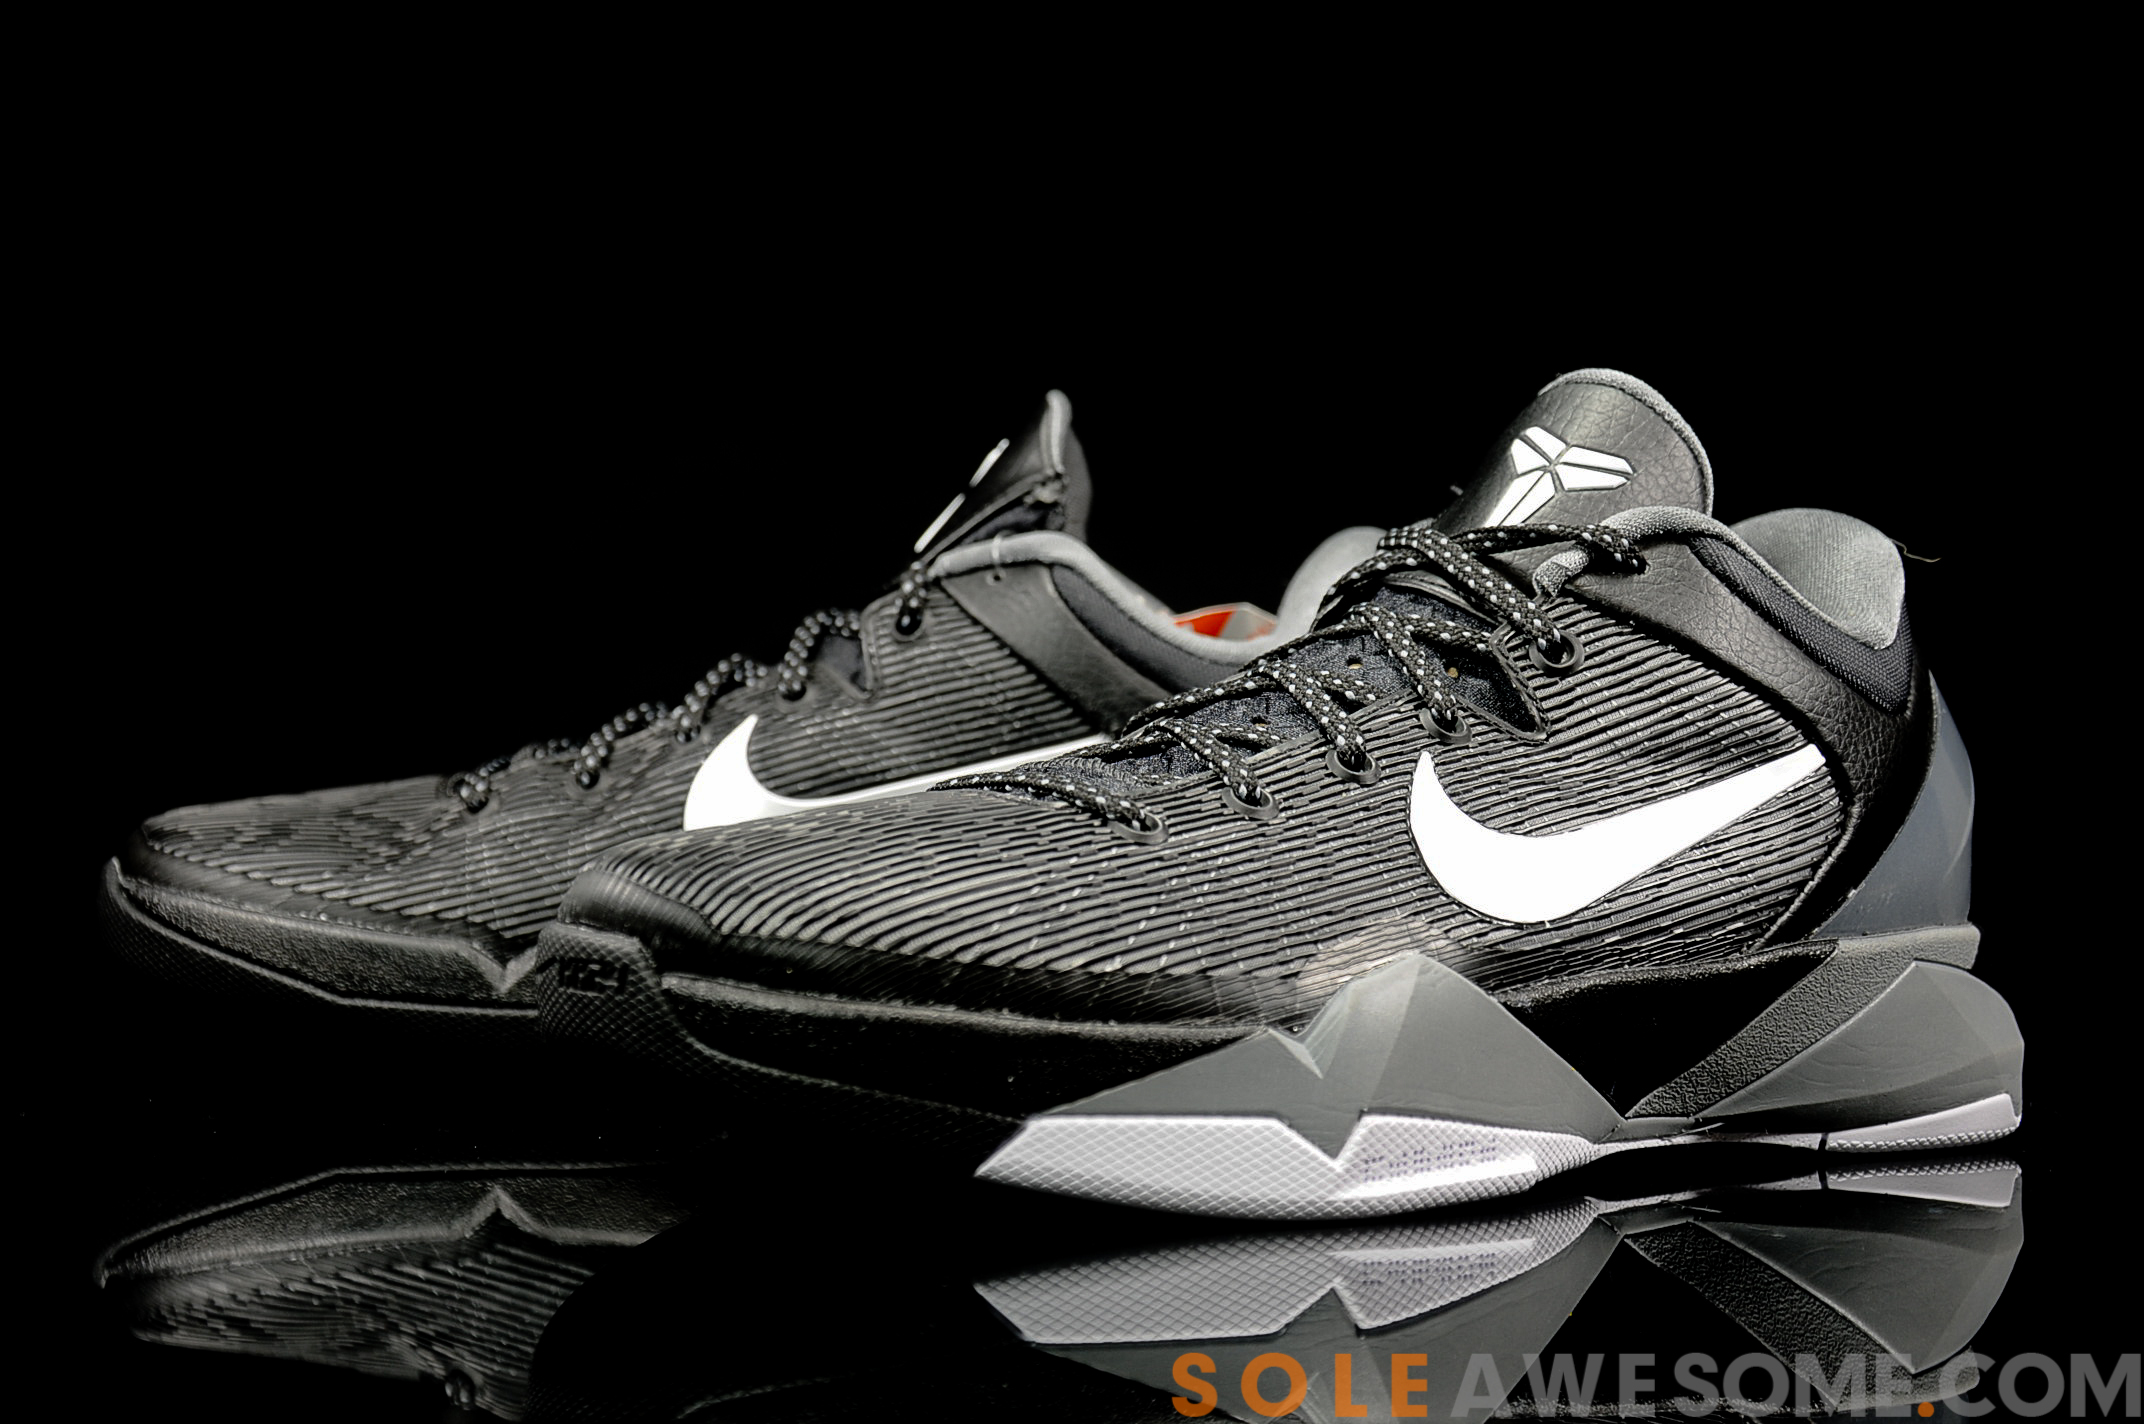 Nike Zoom Kobe VII (7) Black/ Grey- White – New Detailed Images